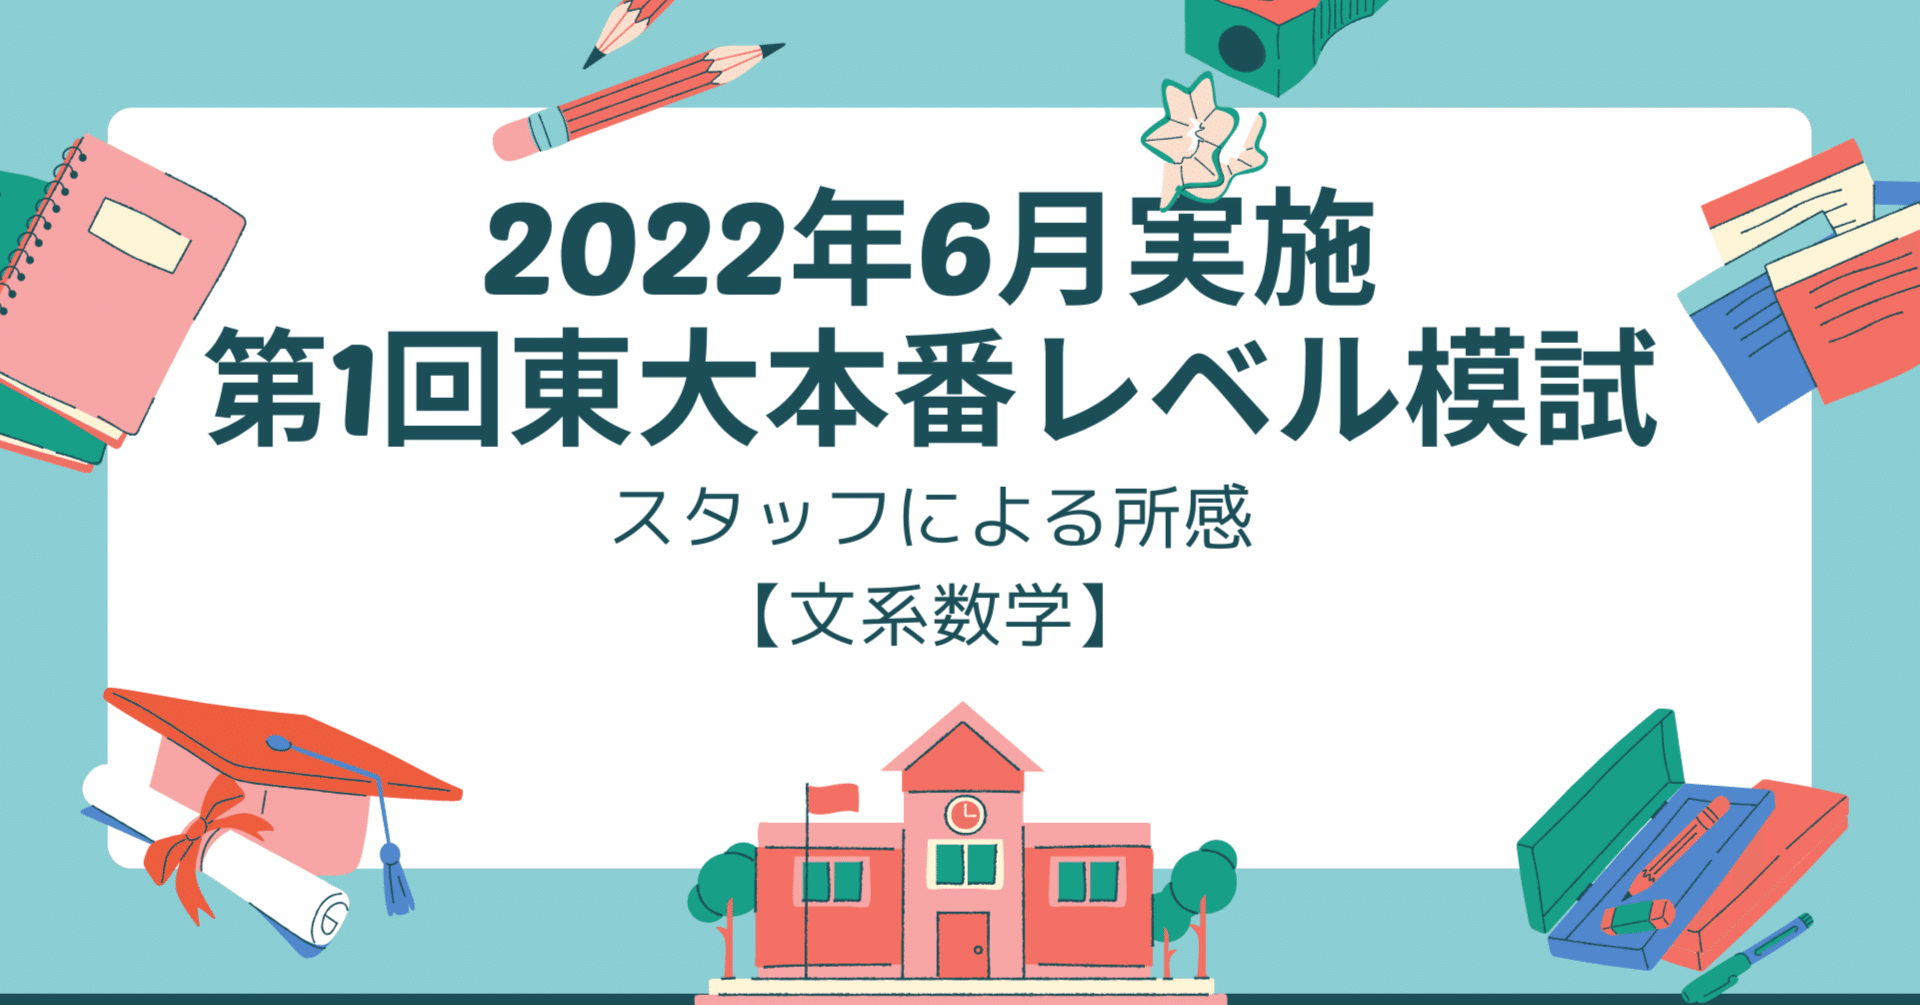 2022年6月実施第1回東大本番レベル模試 スタッフによる所感【文系 ...